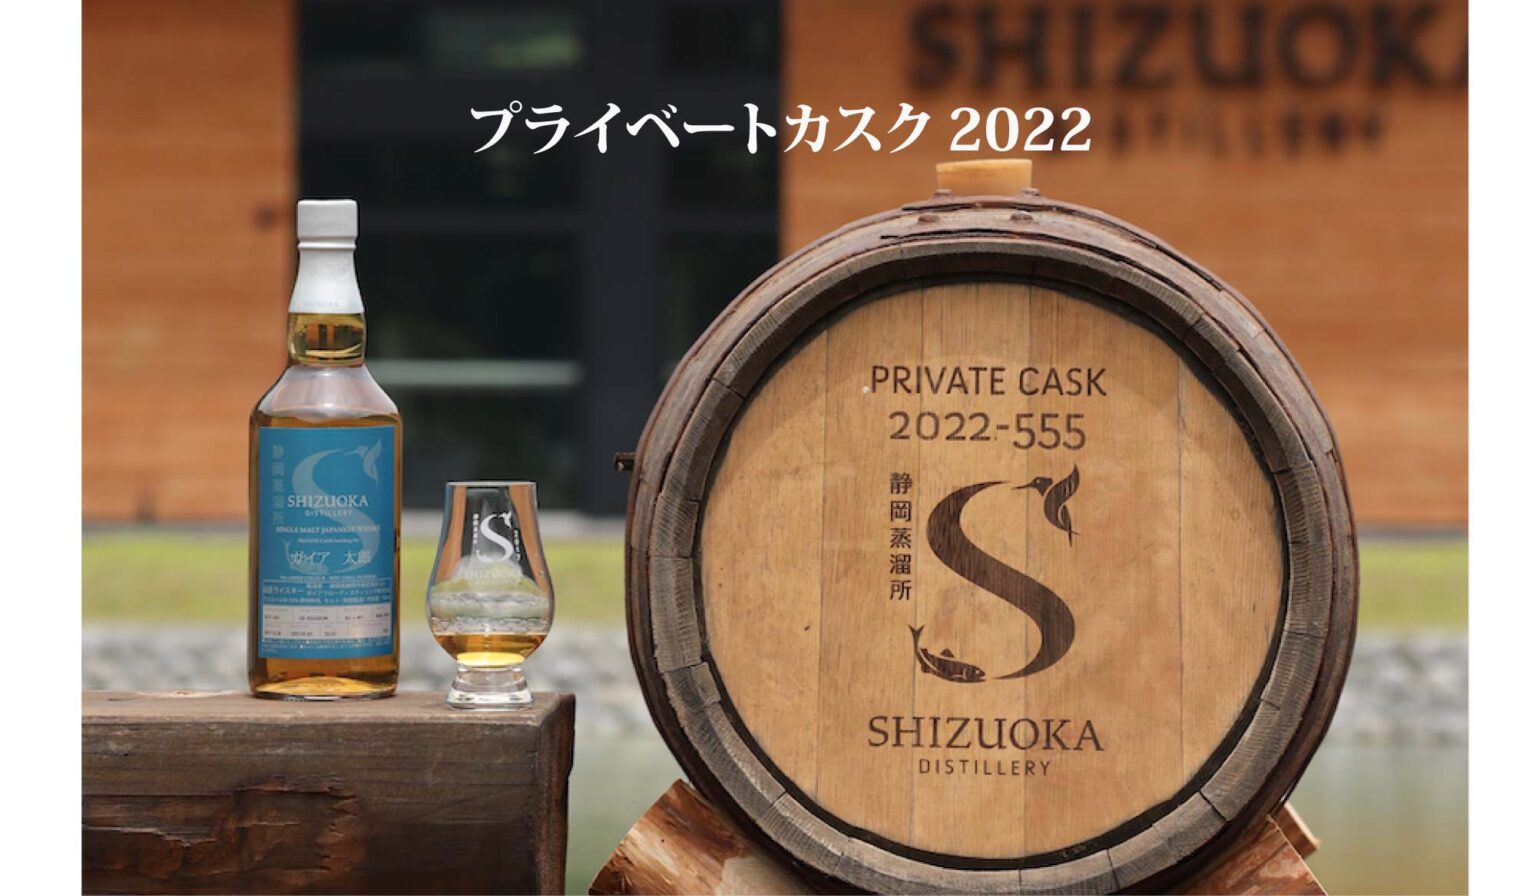 プライベートカスク – 静岡蒸溜所 | Shizuoka Distillery | 静岡ウイスキー